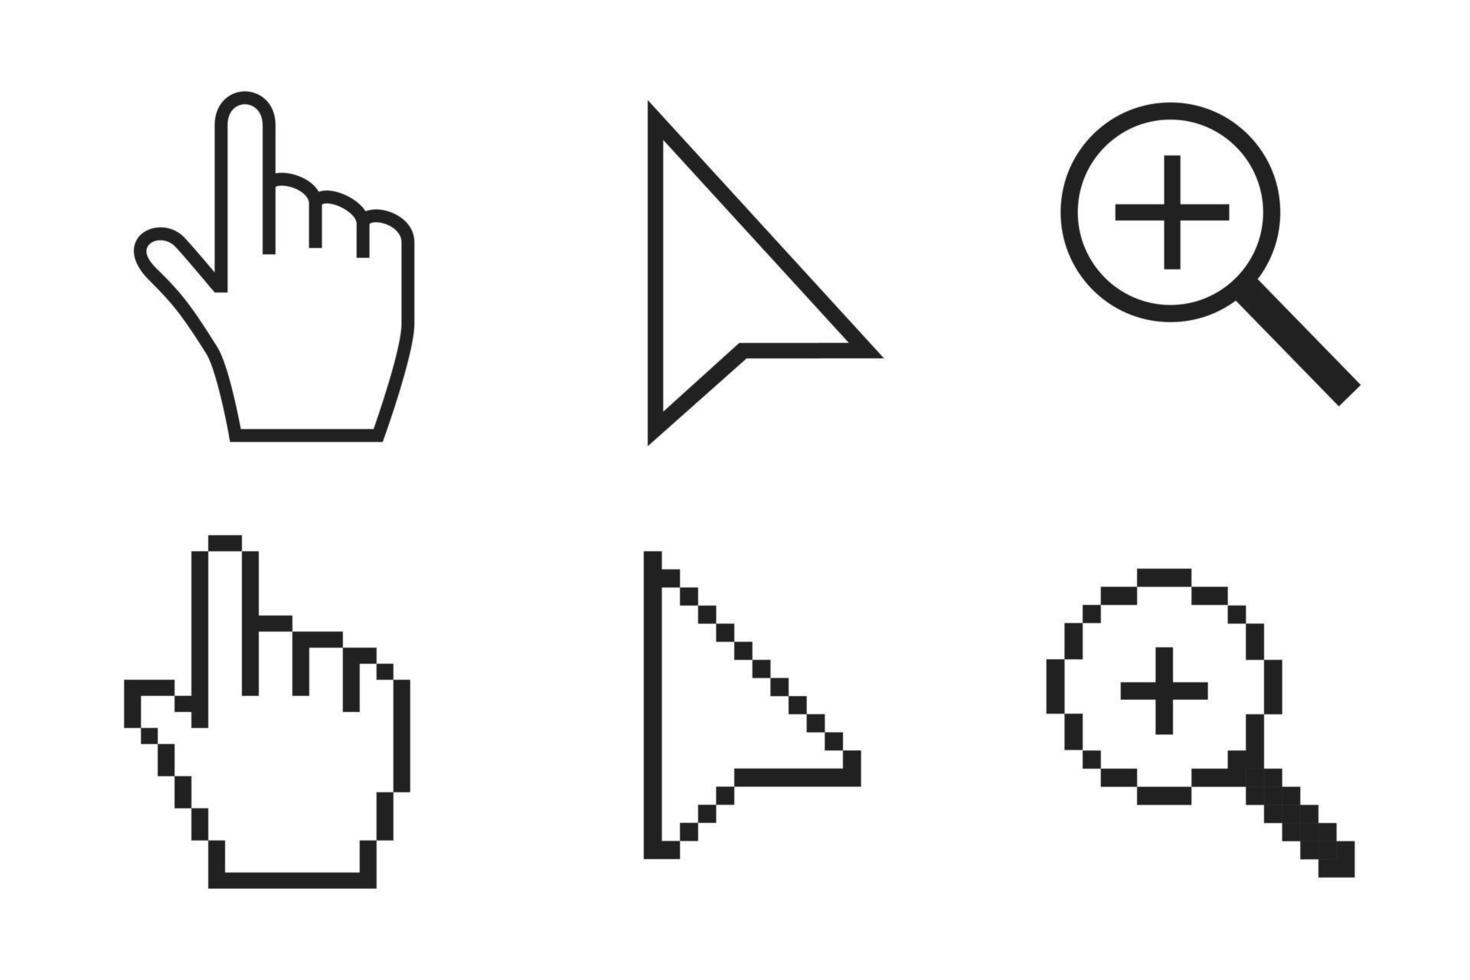 freccia in bianco e nero, mano, pixel di ingrandimento e icone del cursore del mouse senza pixel illustrazione vettoriale